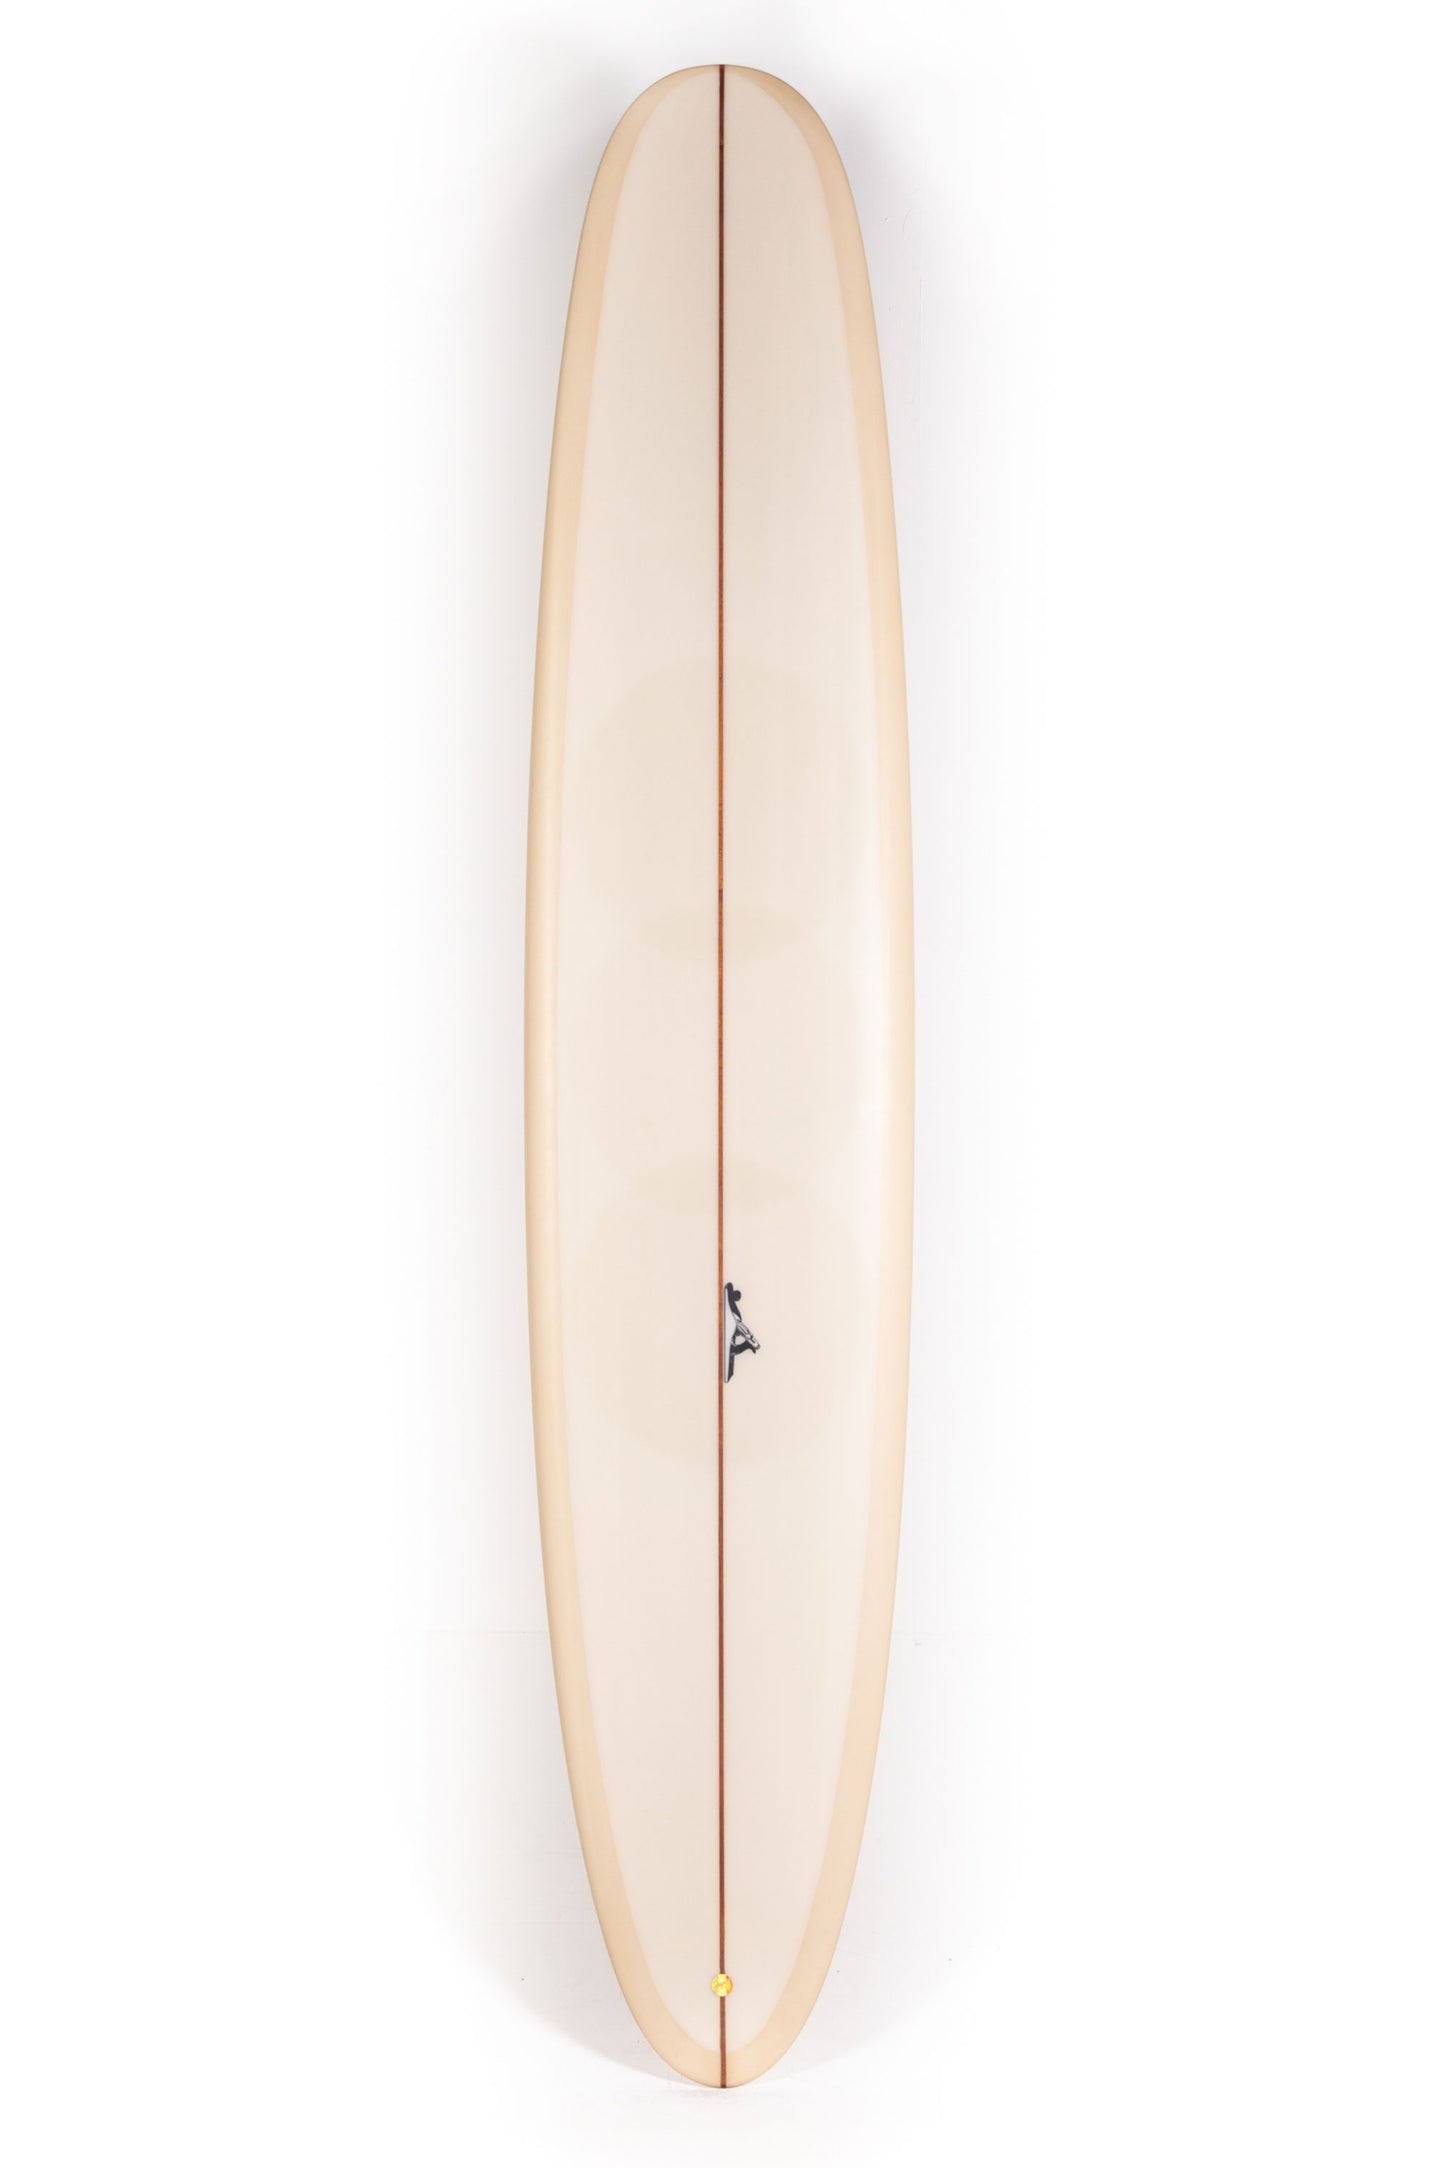 Pukas-Surf-Shop-Thomas-Bexon-Surfboards-Wizl-Thomas-Bexon-9_8_-WIZL98SAND